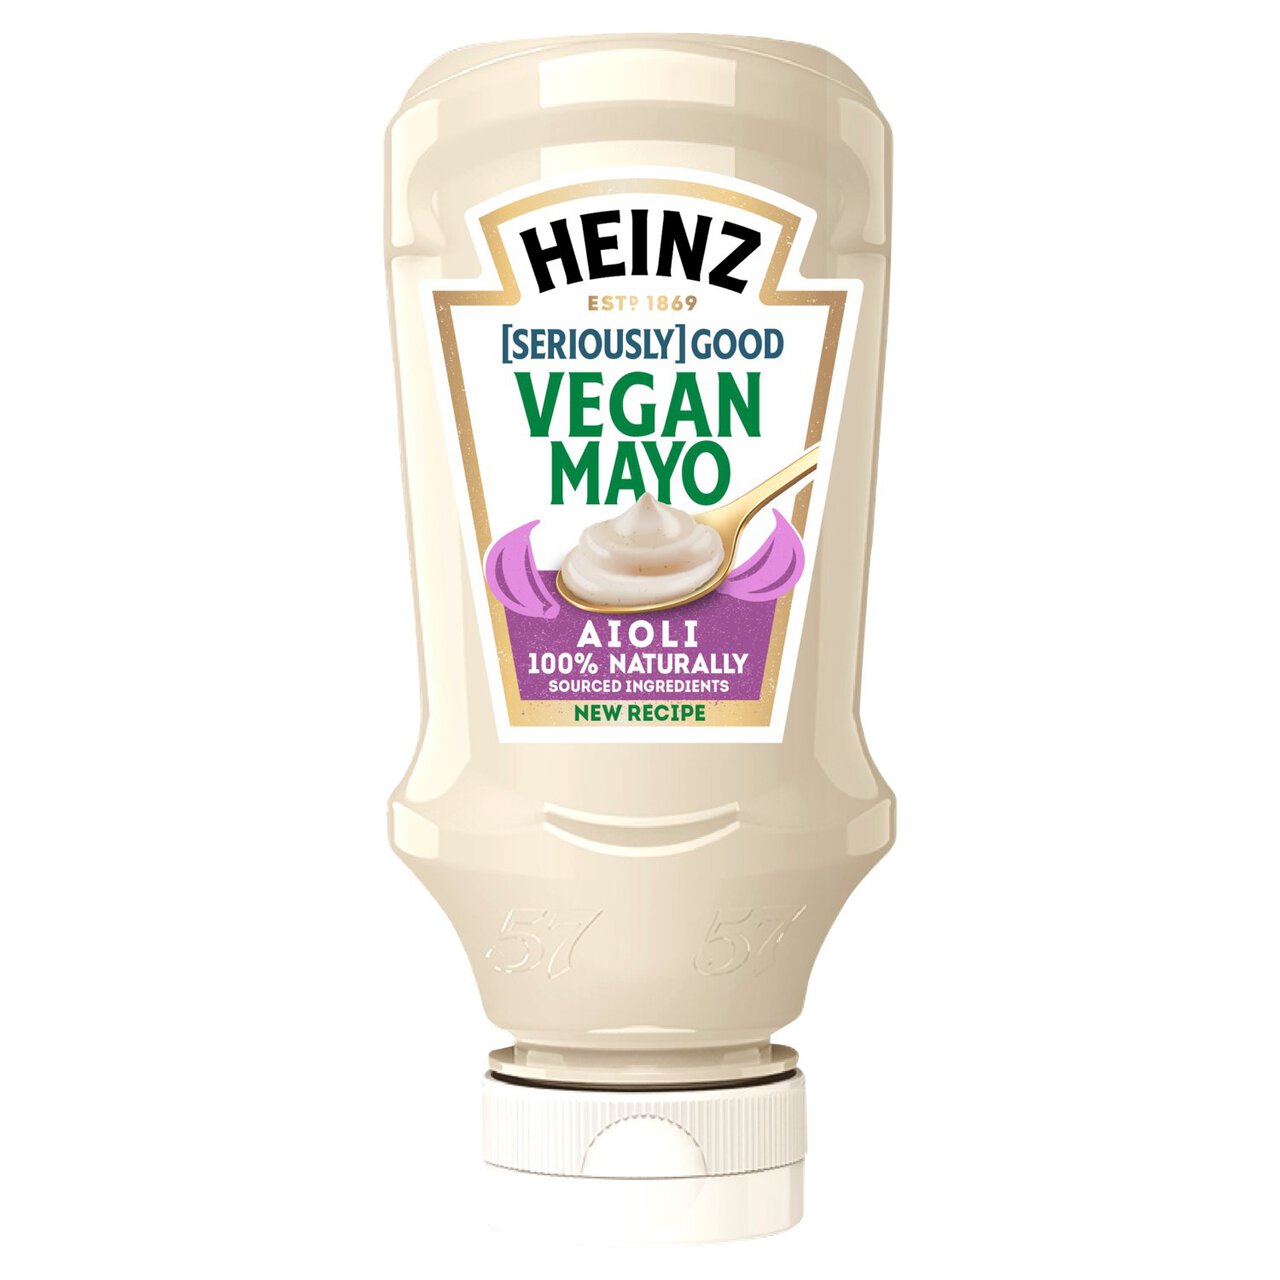 Heinz Vegan Mayo Garlic Aioli 200g